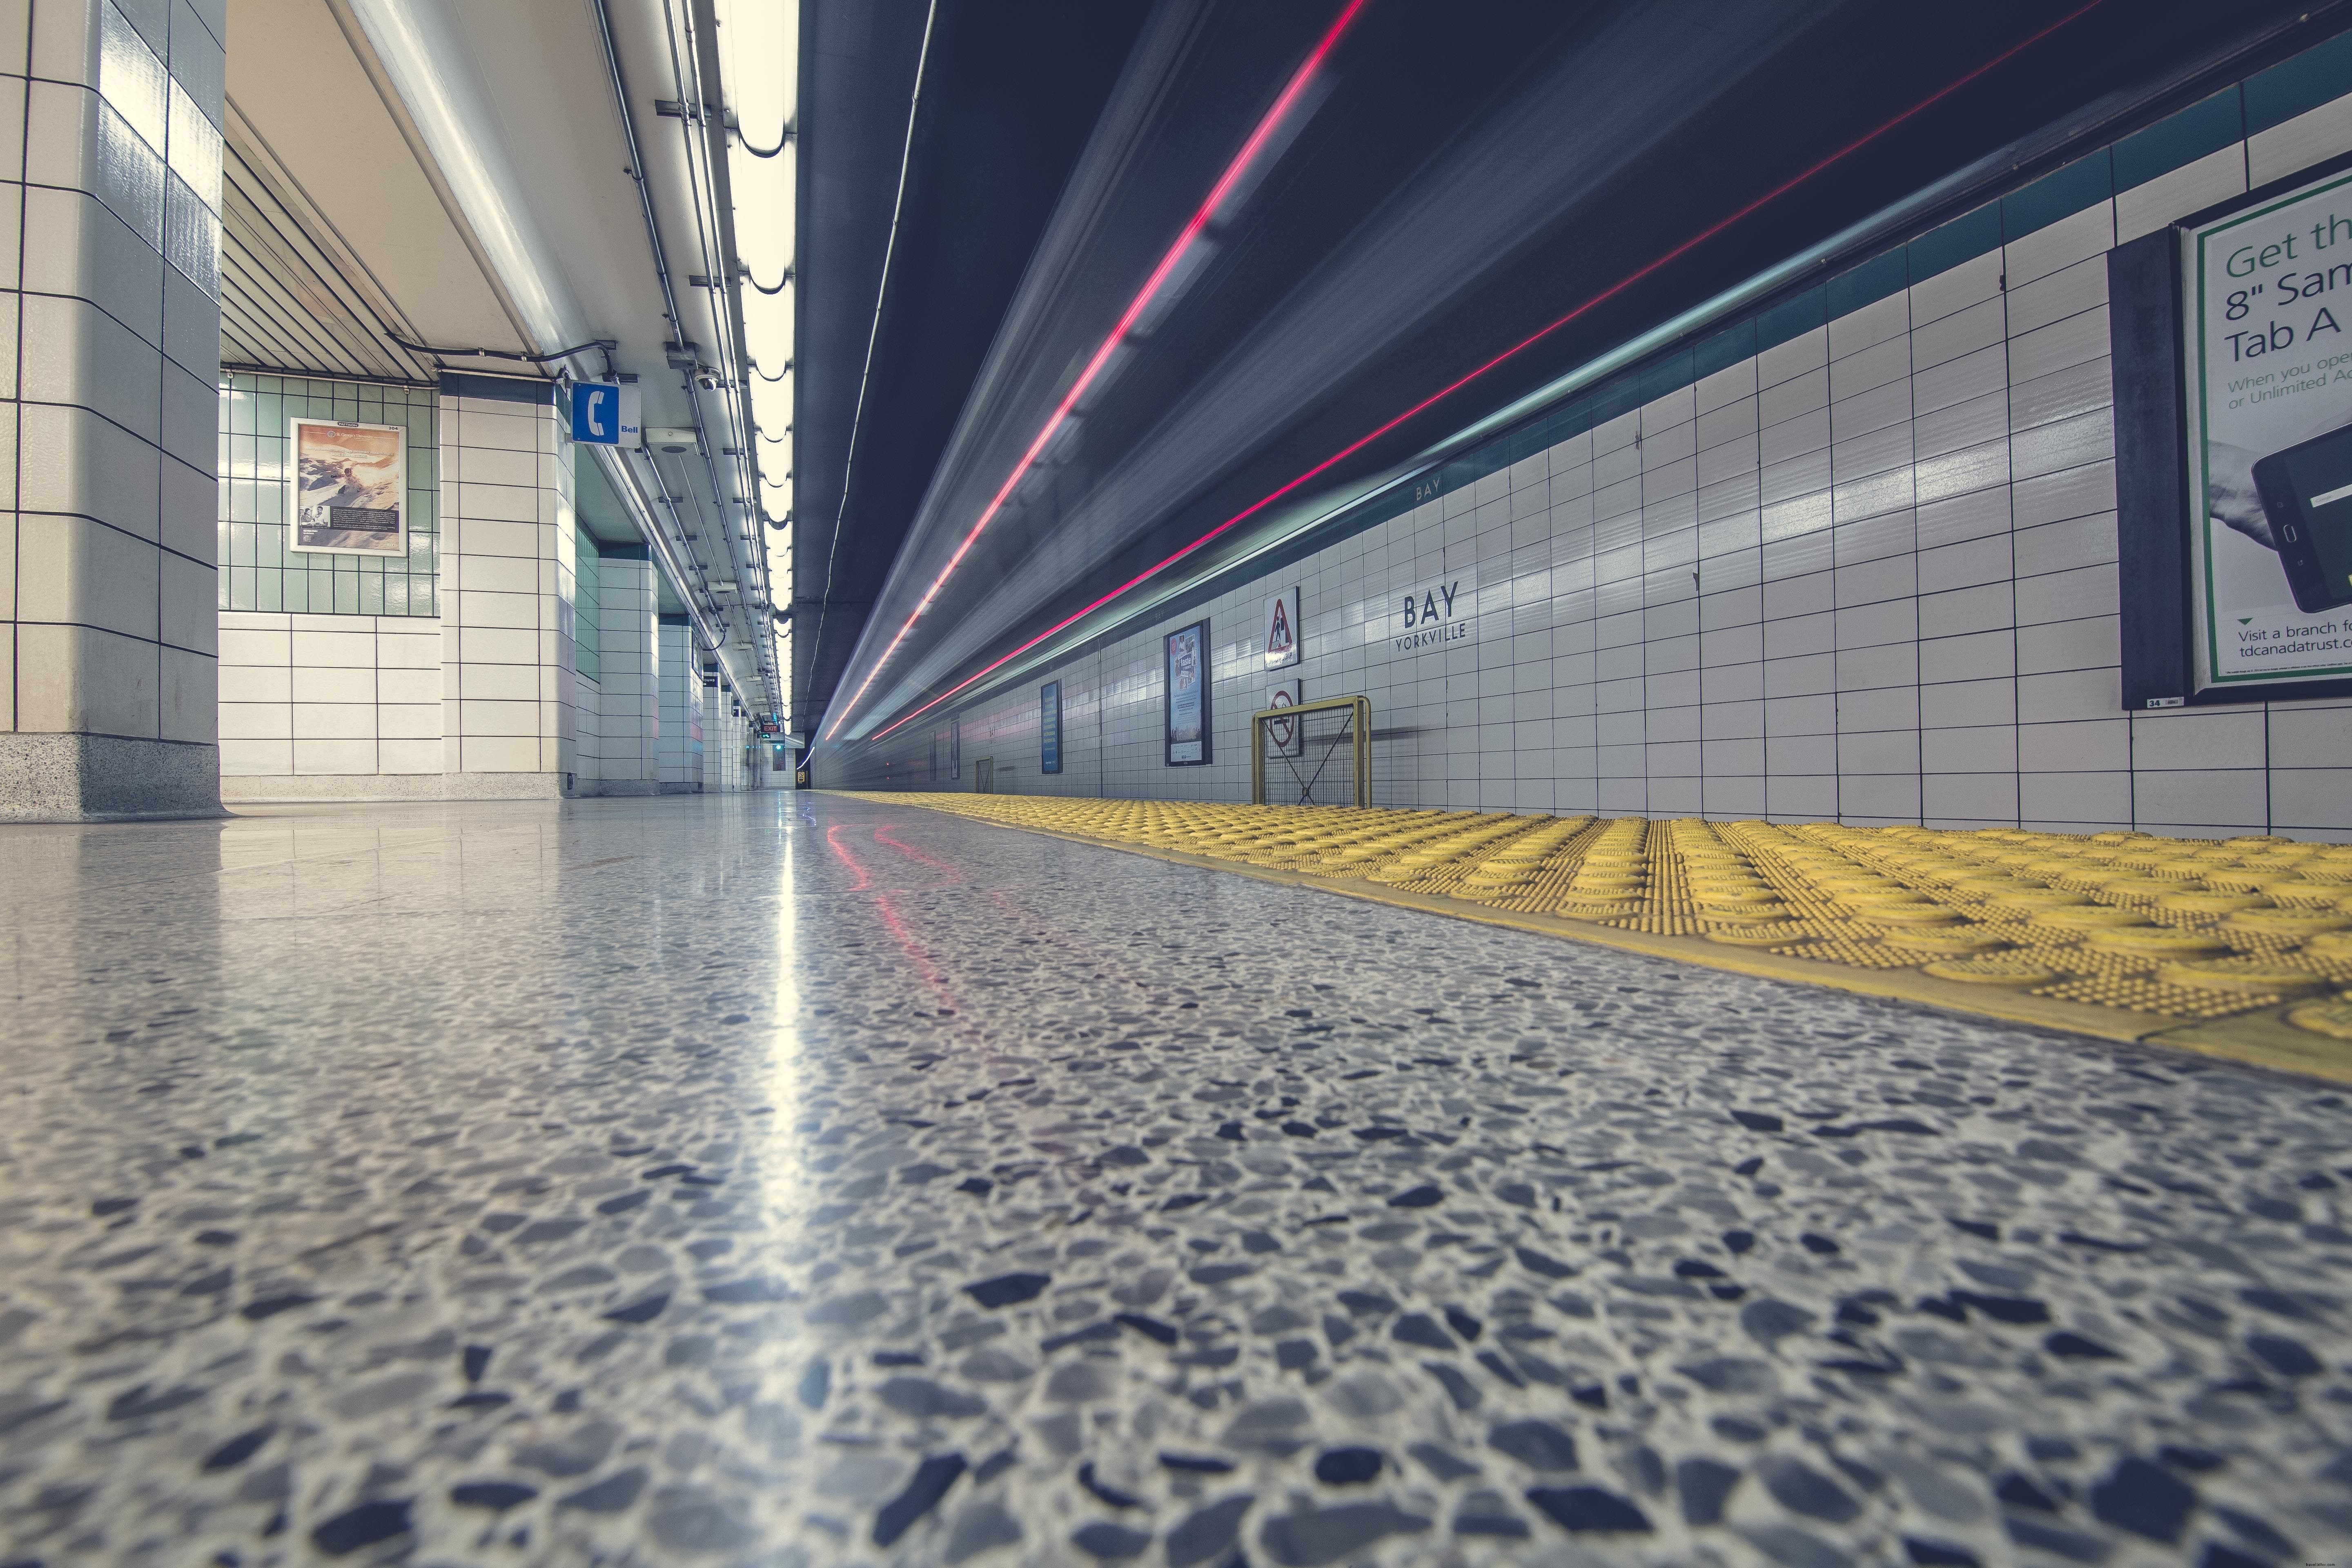 Foto del pavimento e del tunnel della metropolitana